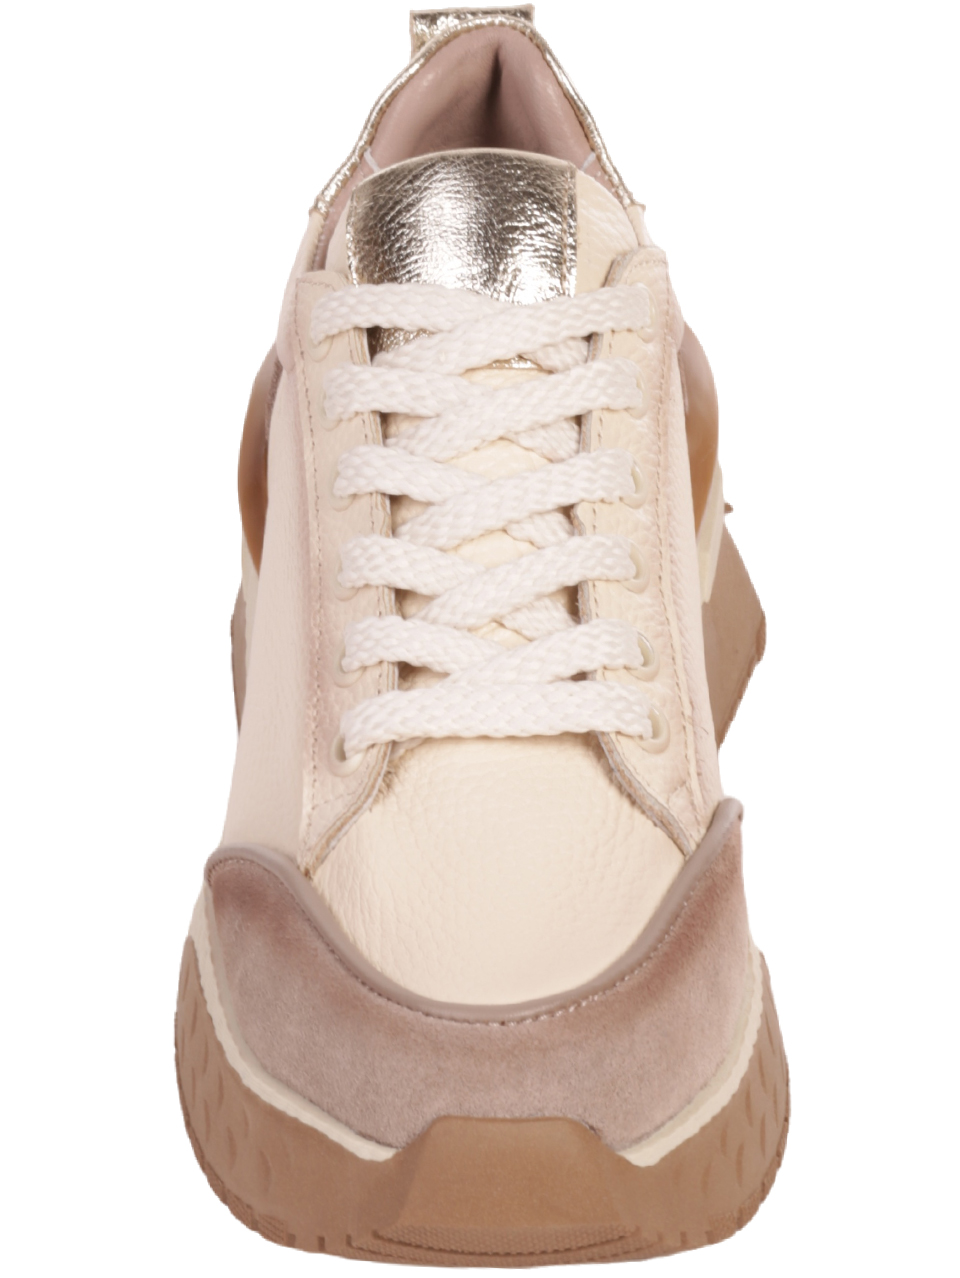 Дамски обувки от естествена кожа и велур в бежово 3AT-23727 beige